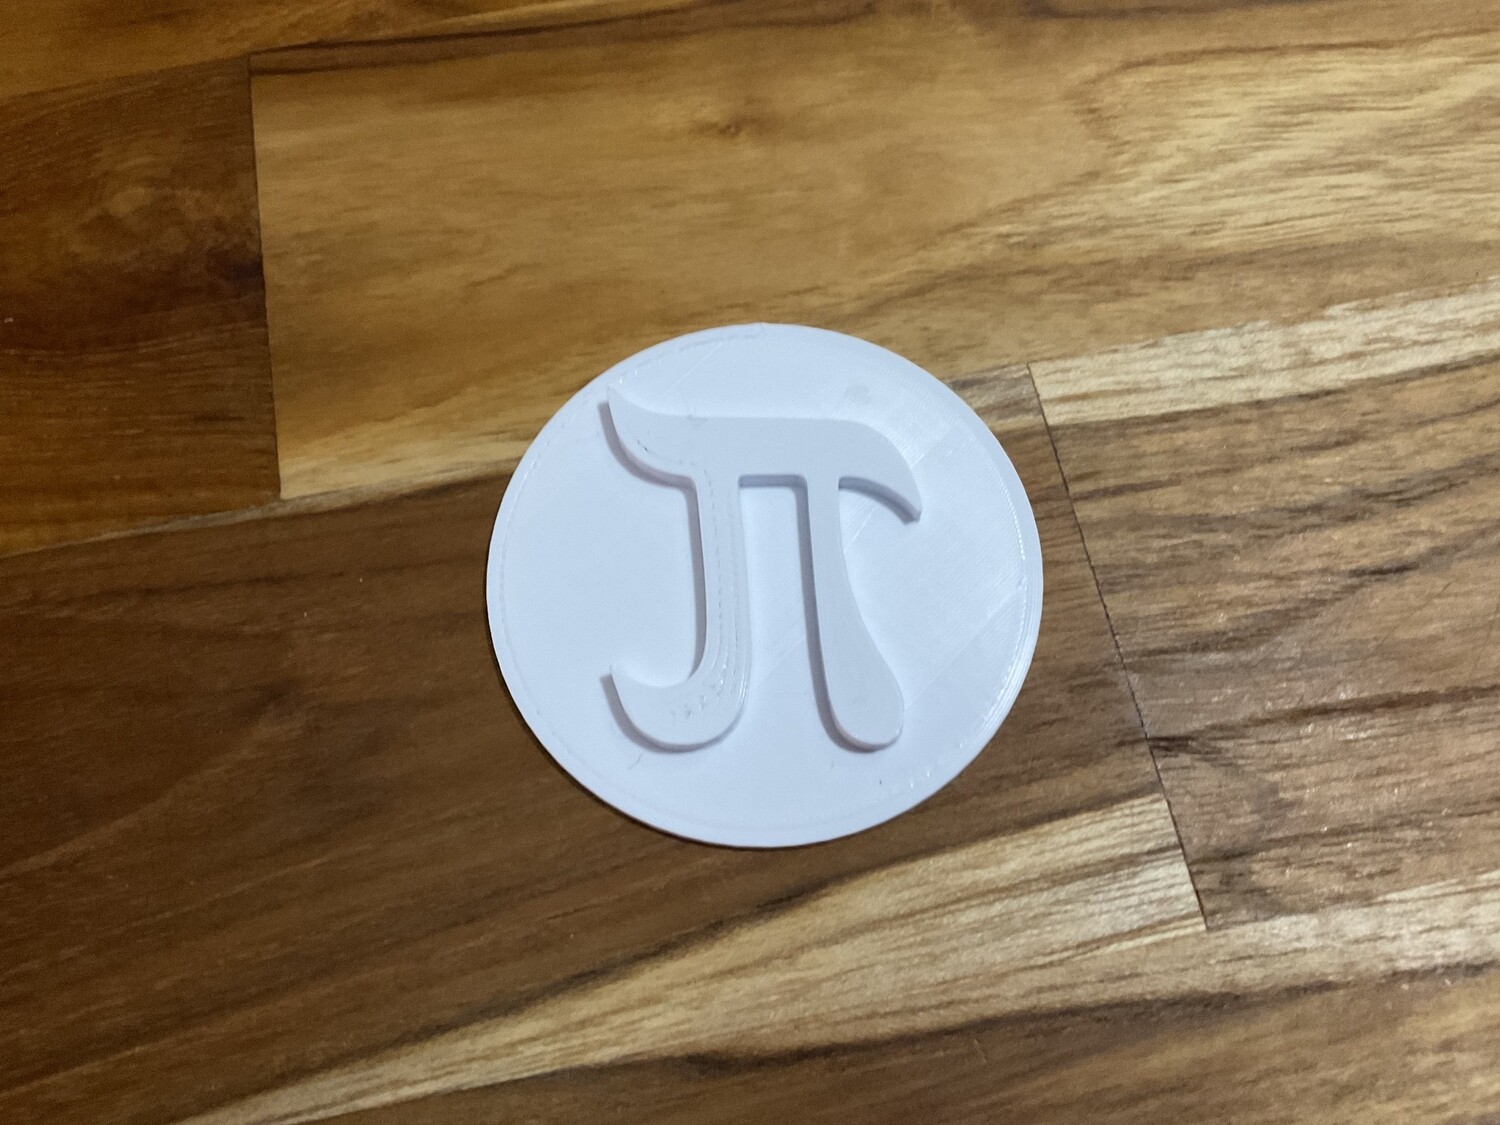 Pi symbol stamp only